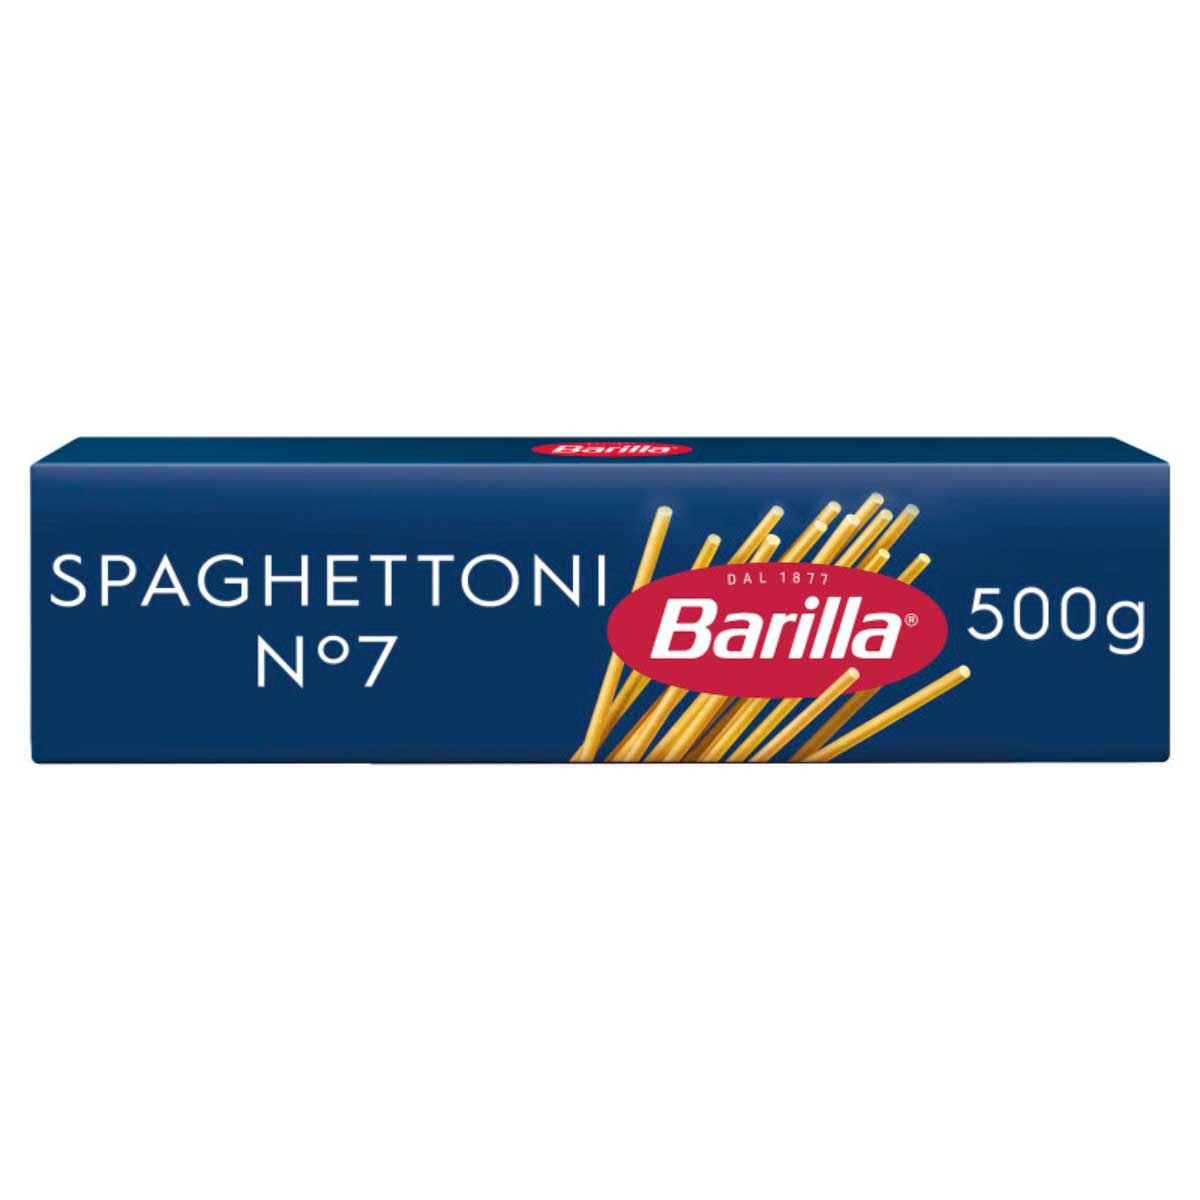 macarrao-spaghettoni-n7-grano-duro-barilla-500g-1.jpg